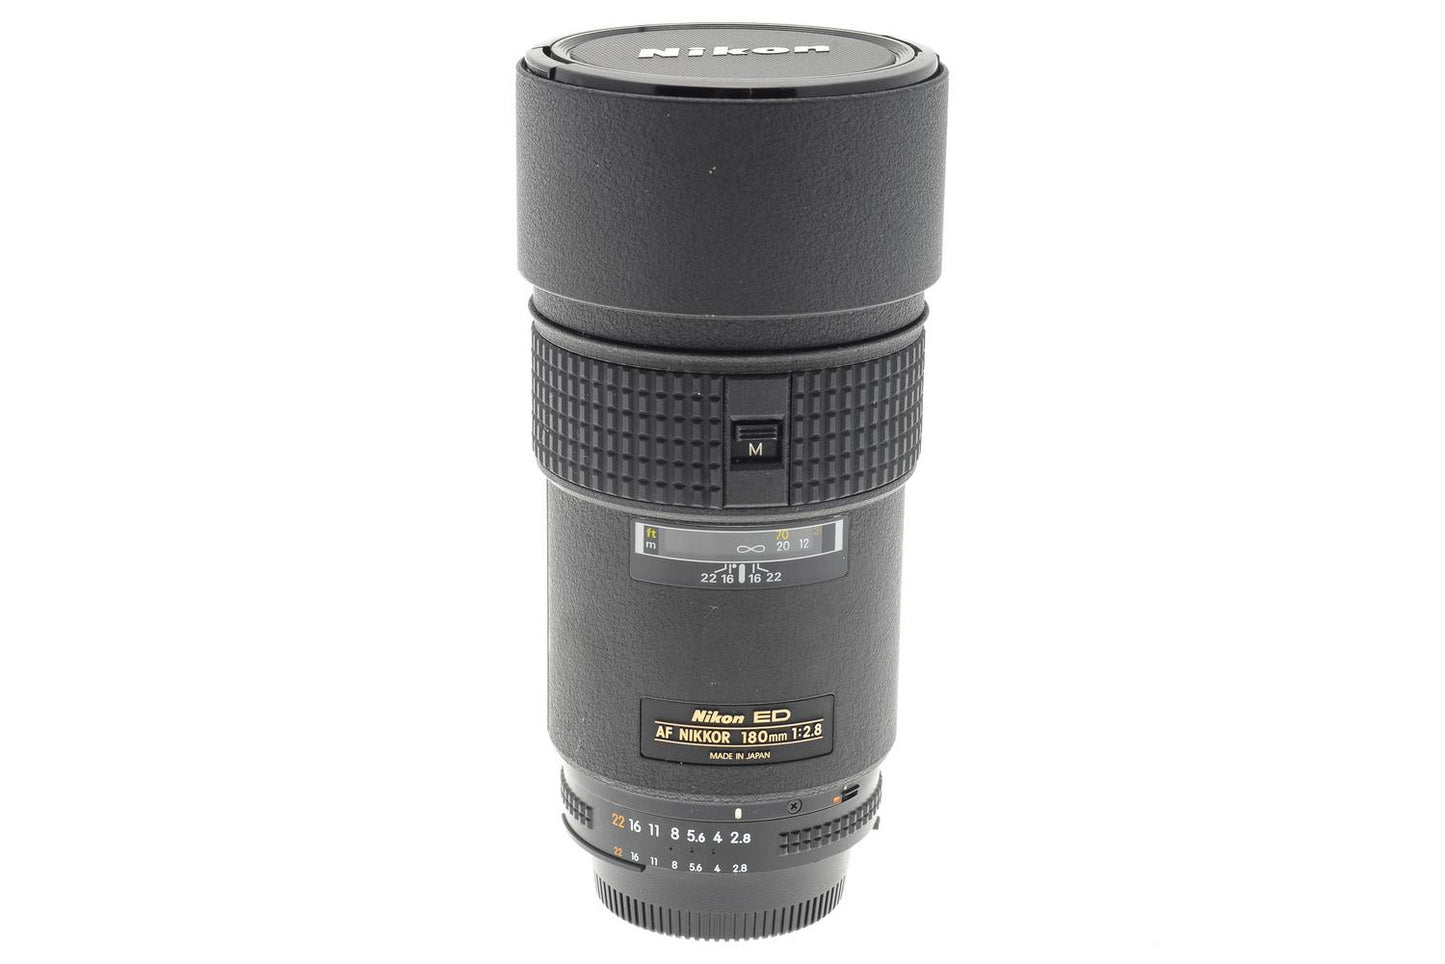 Nikon 180mm f2.8 IF ED AF Nikkor Mark III - Lens